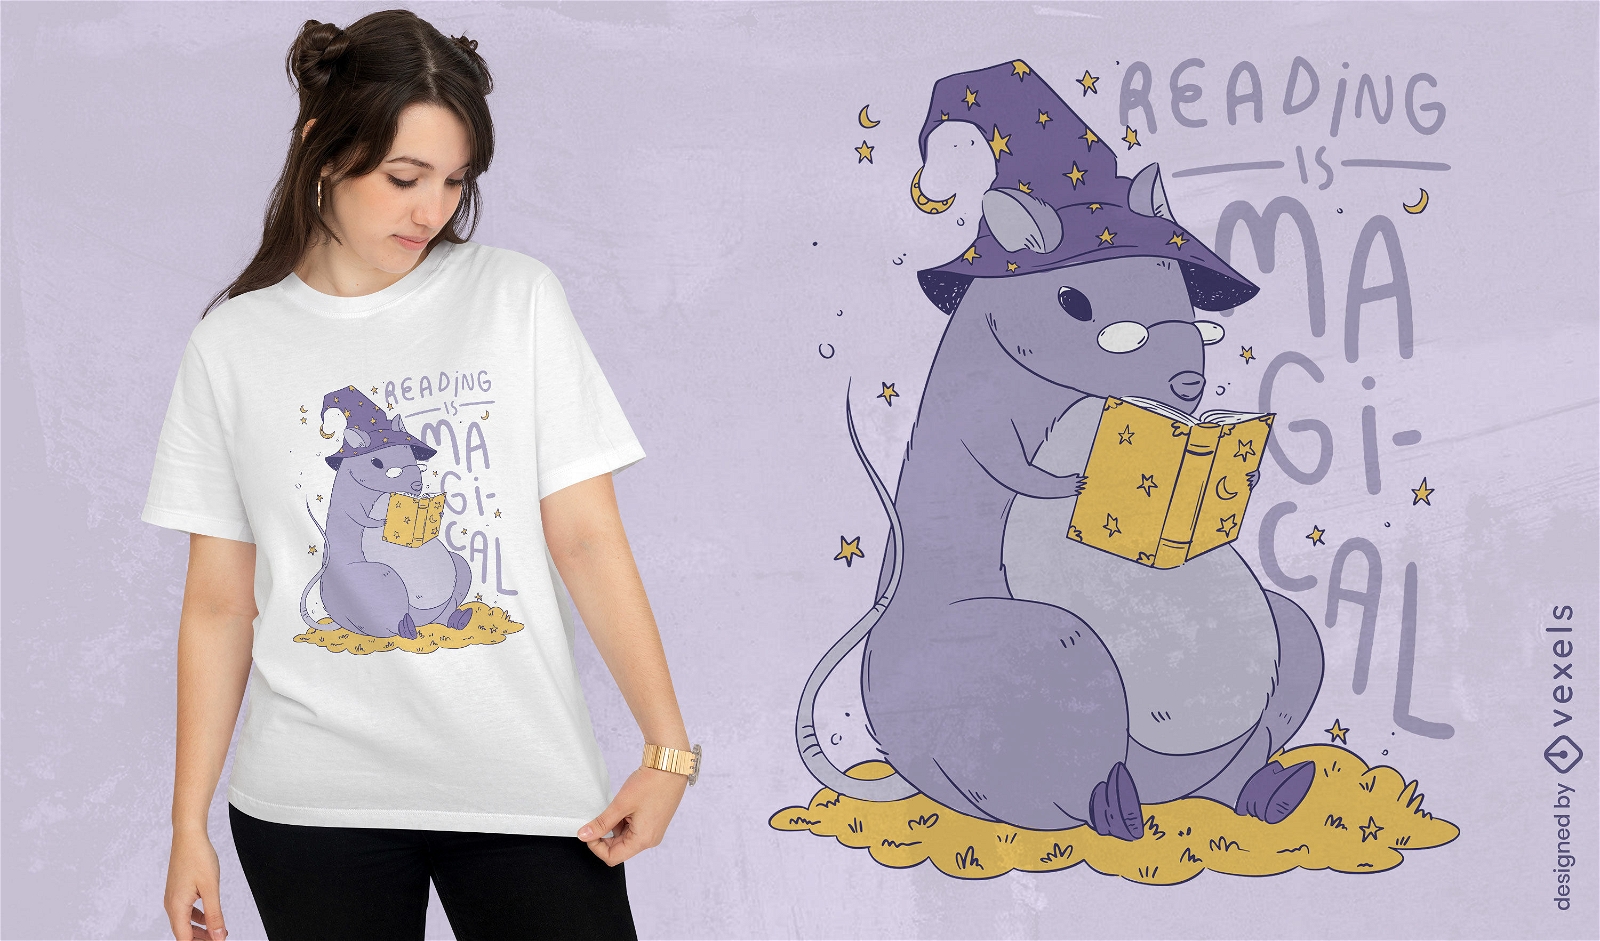 Dise?o de camiseta de libro m?gico de lectura de rata